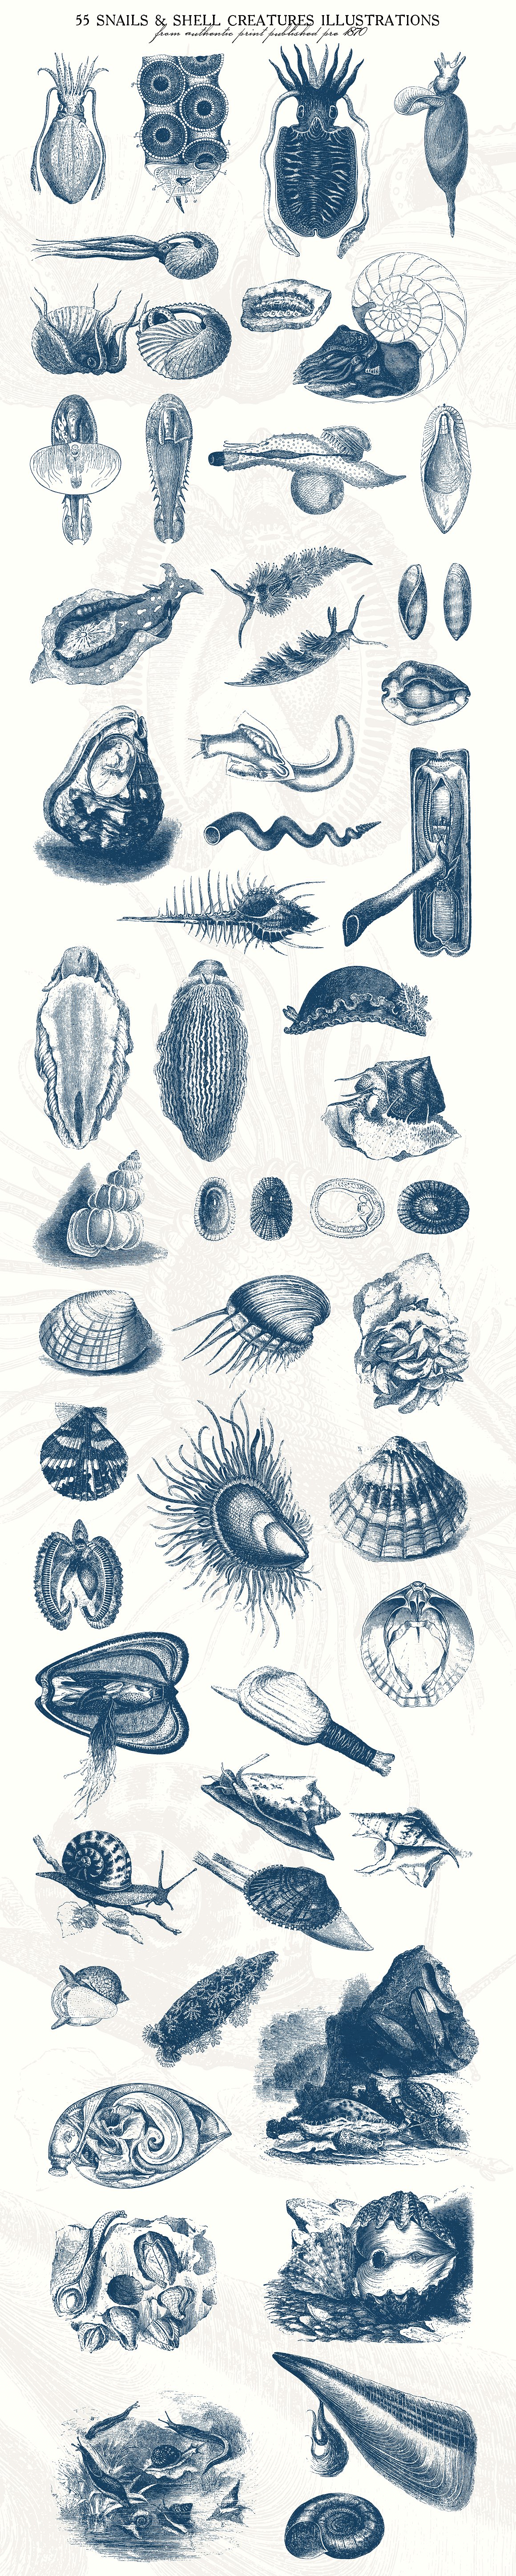 复古手绘壳类生物插图图案55 Snails and Shel